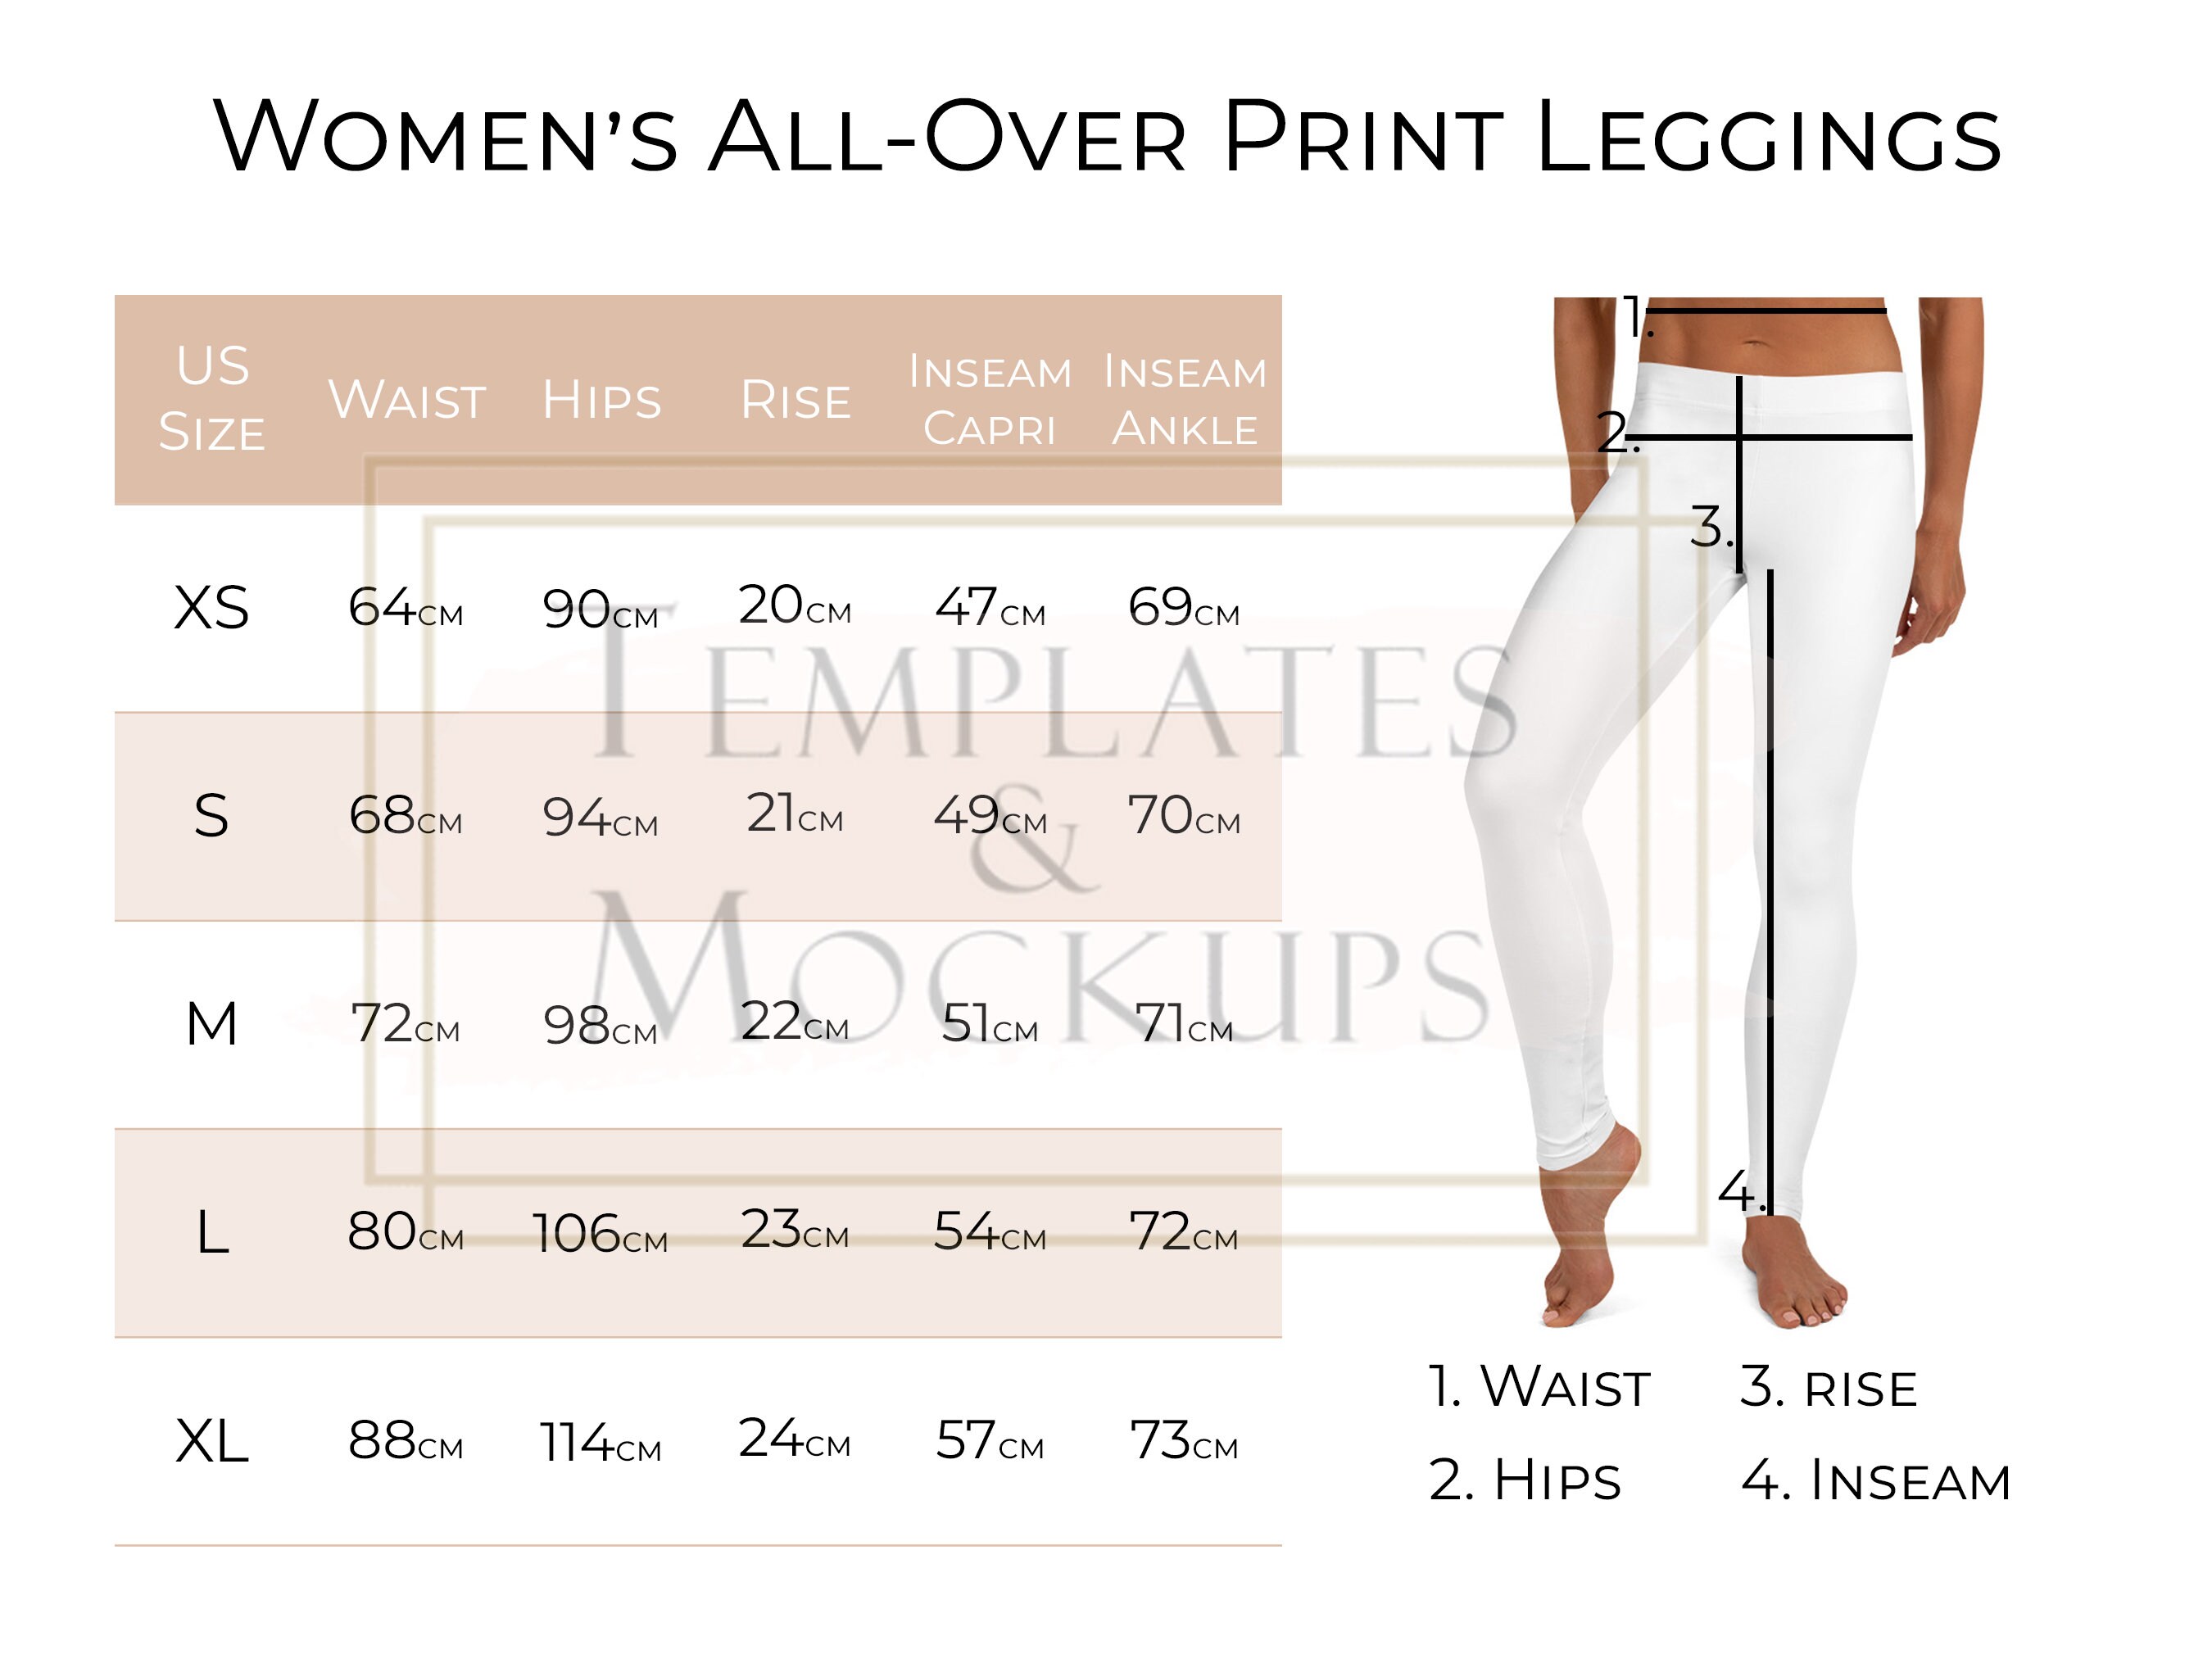 Lululemon Sizing Tips + Inseam Length Guide for Leggings